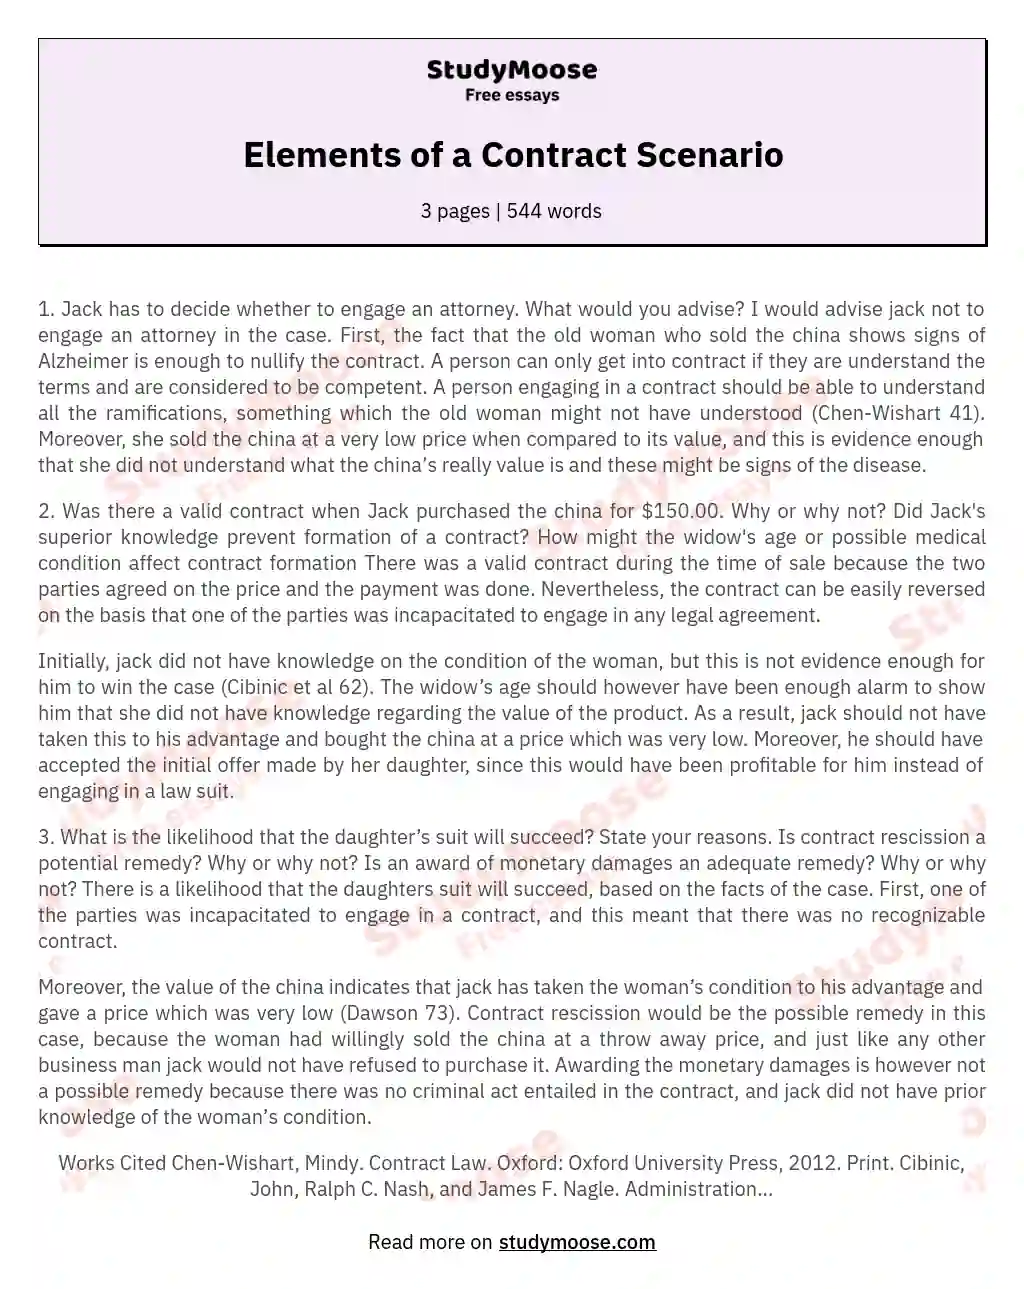 Elements of a Contract Scenario essay